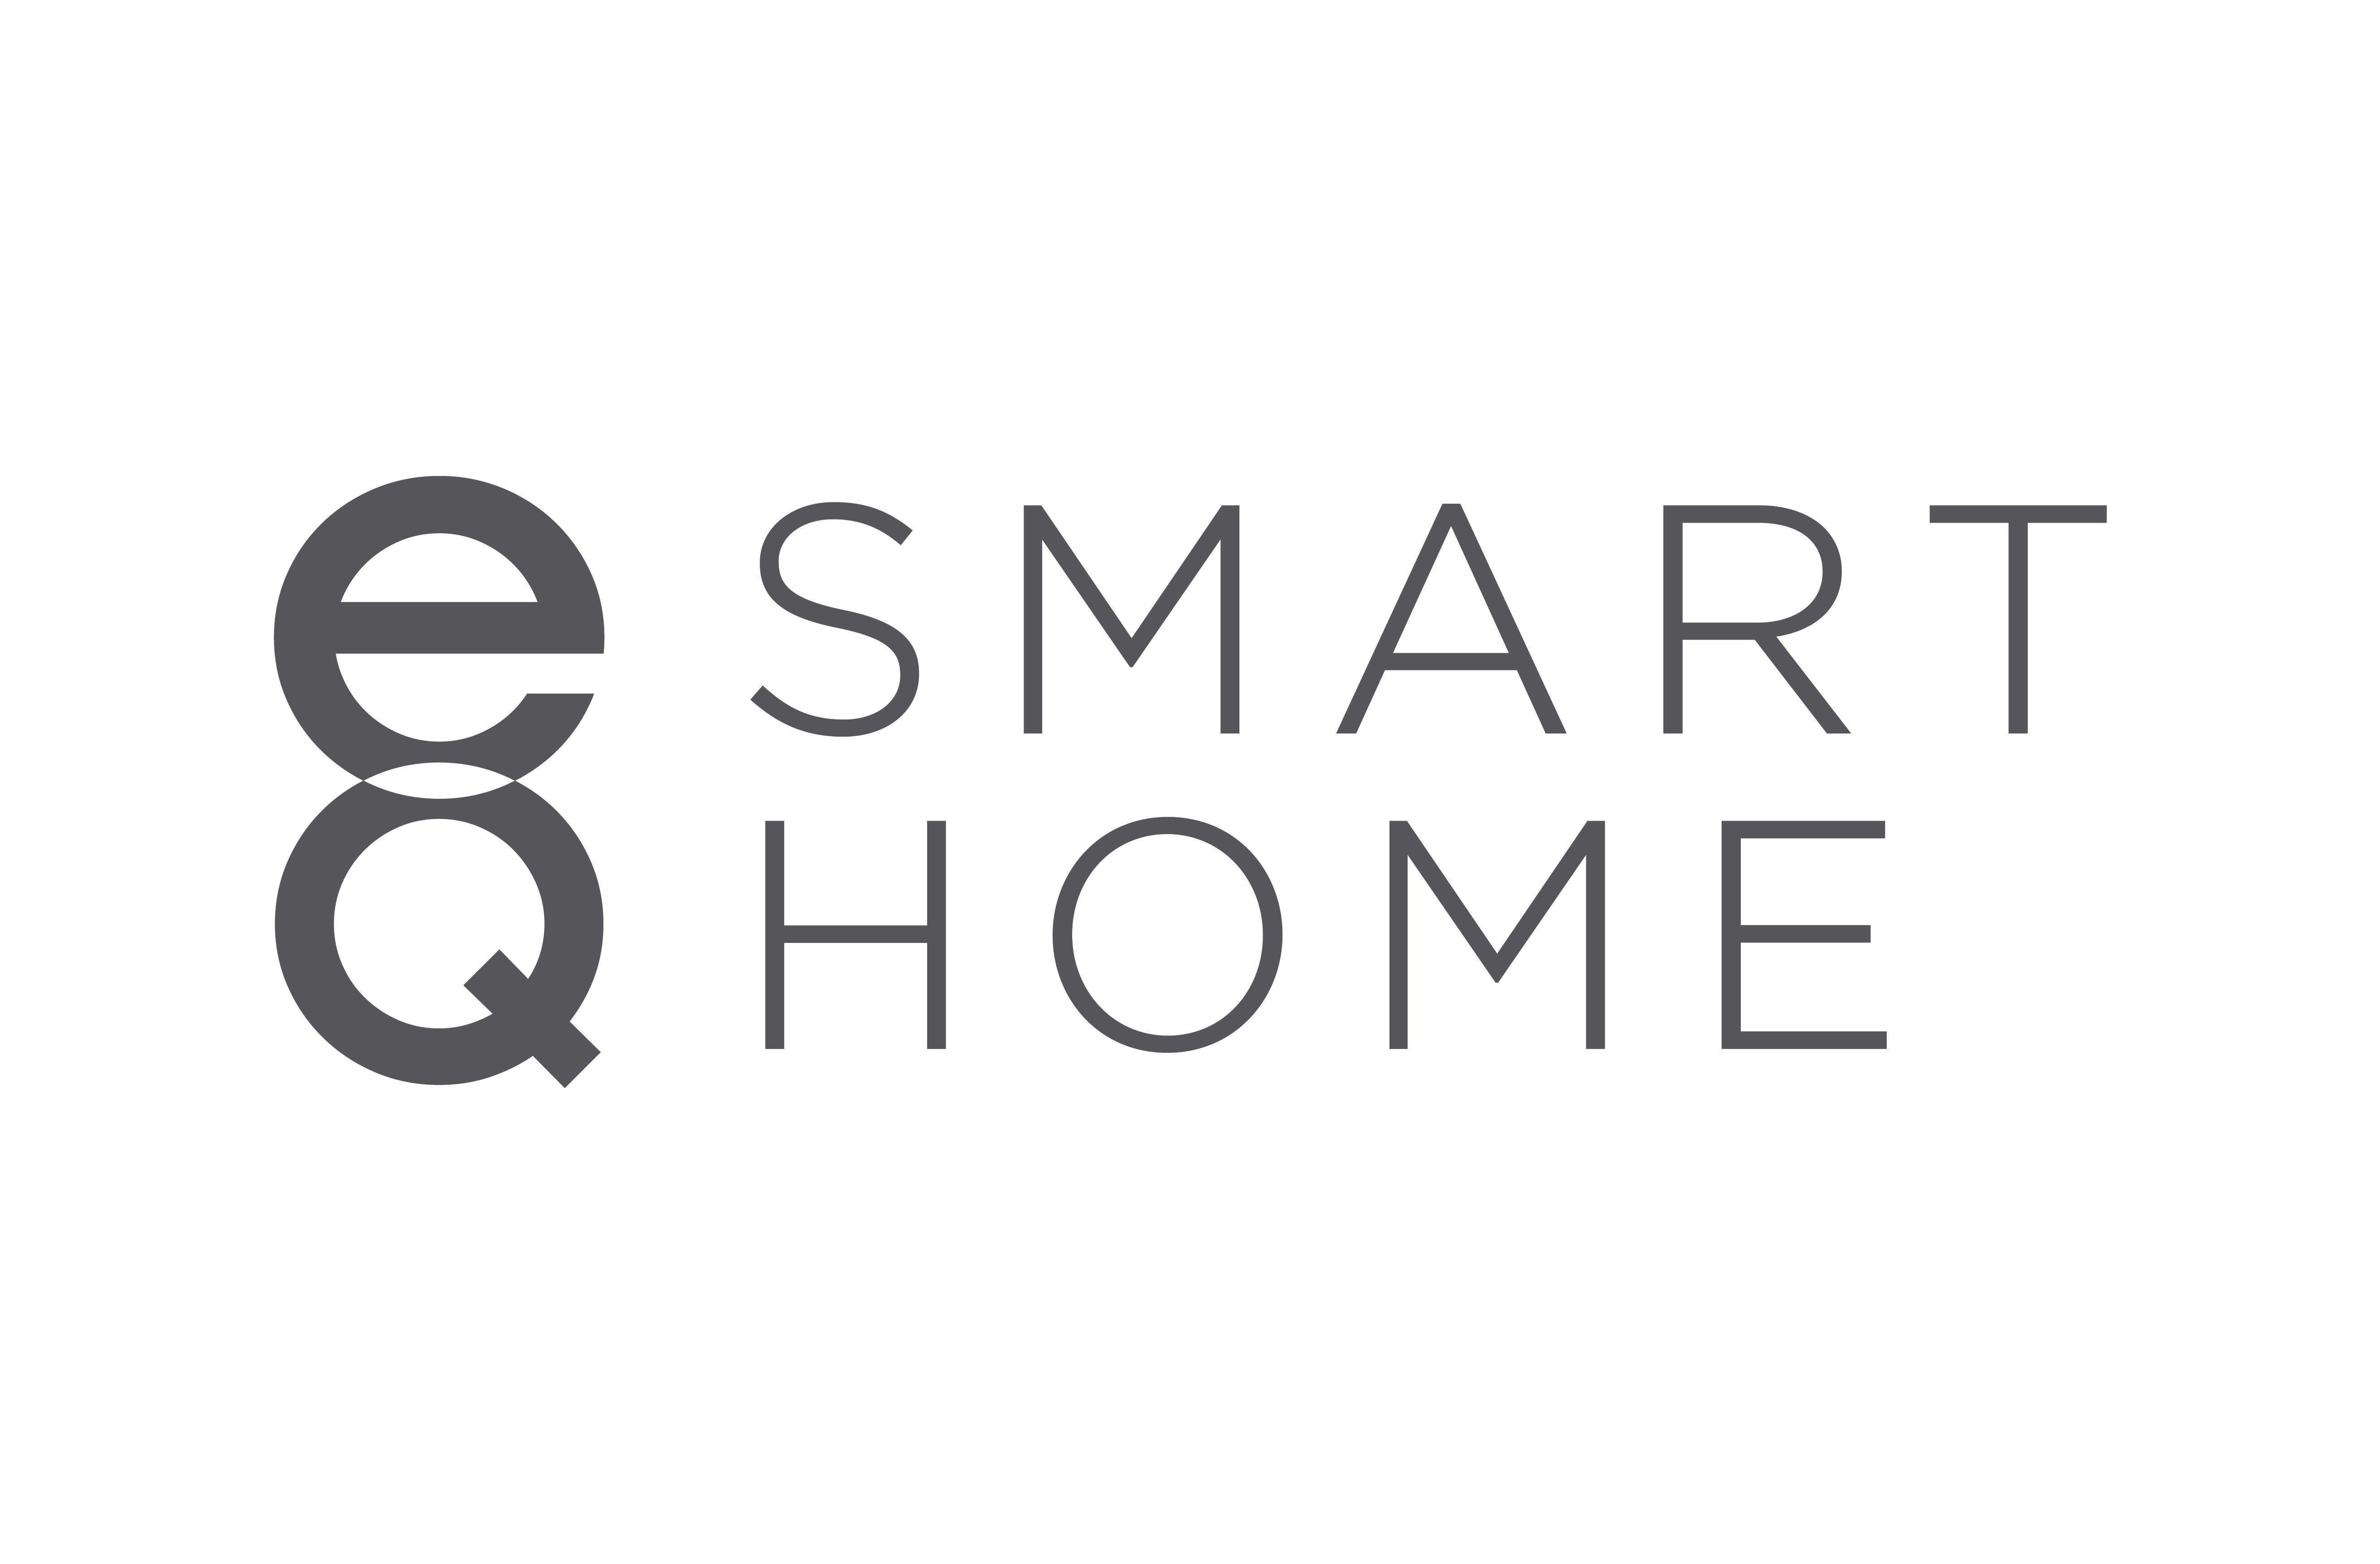 EQ Smart Home Logo